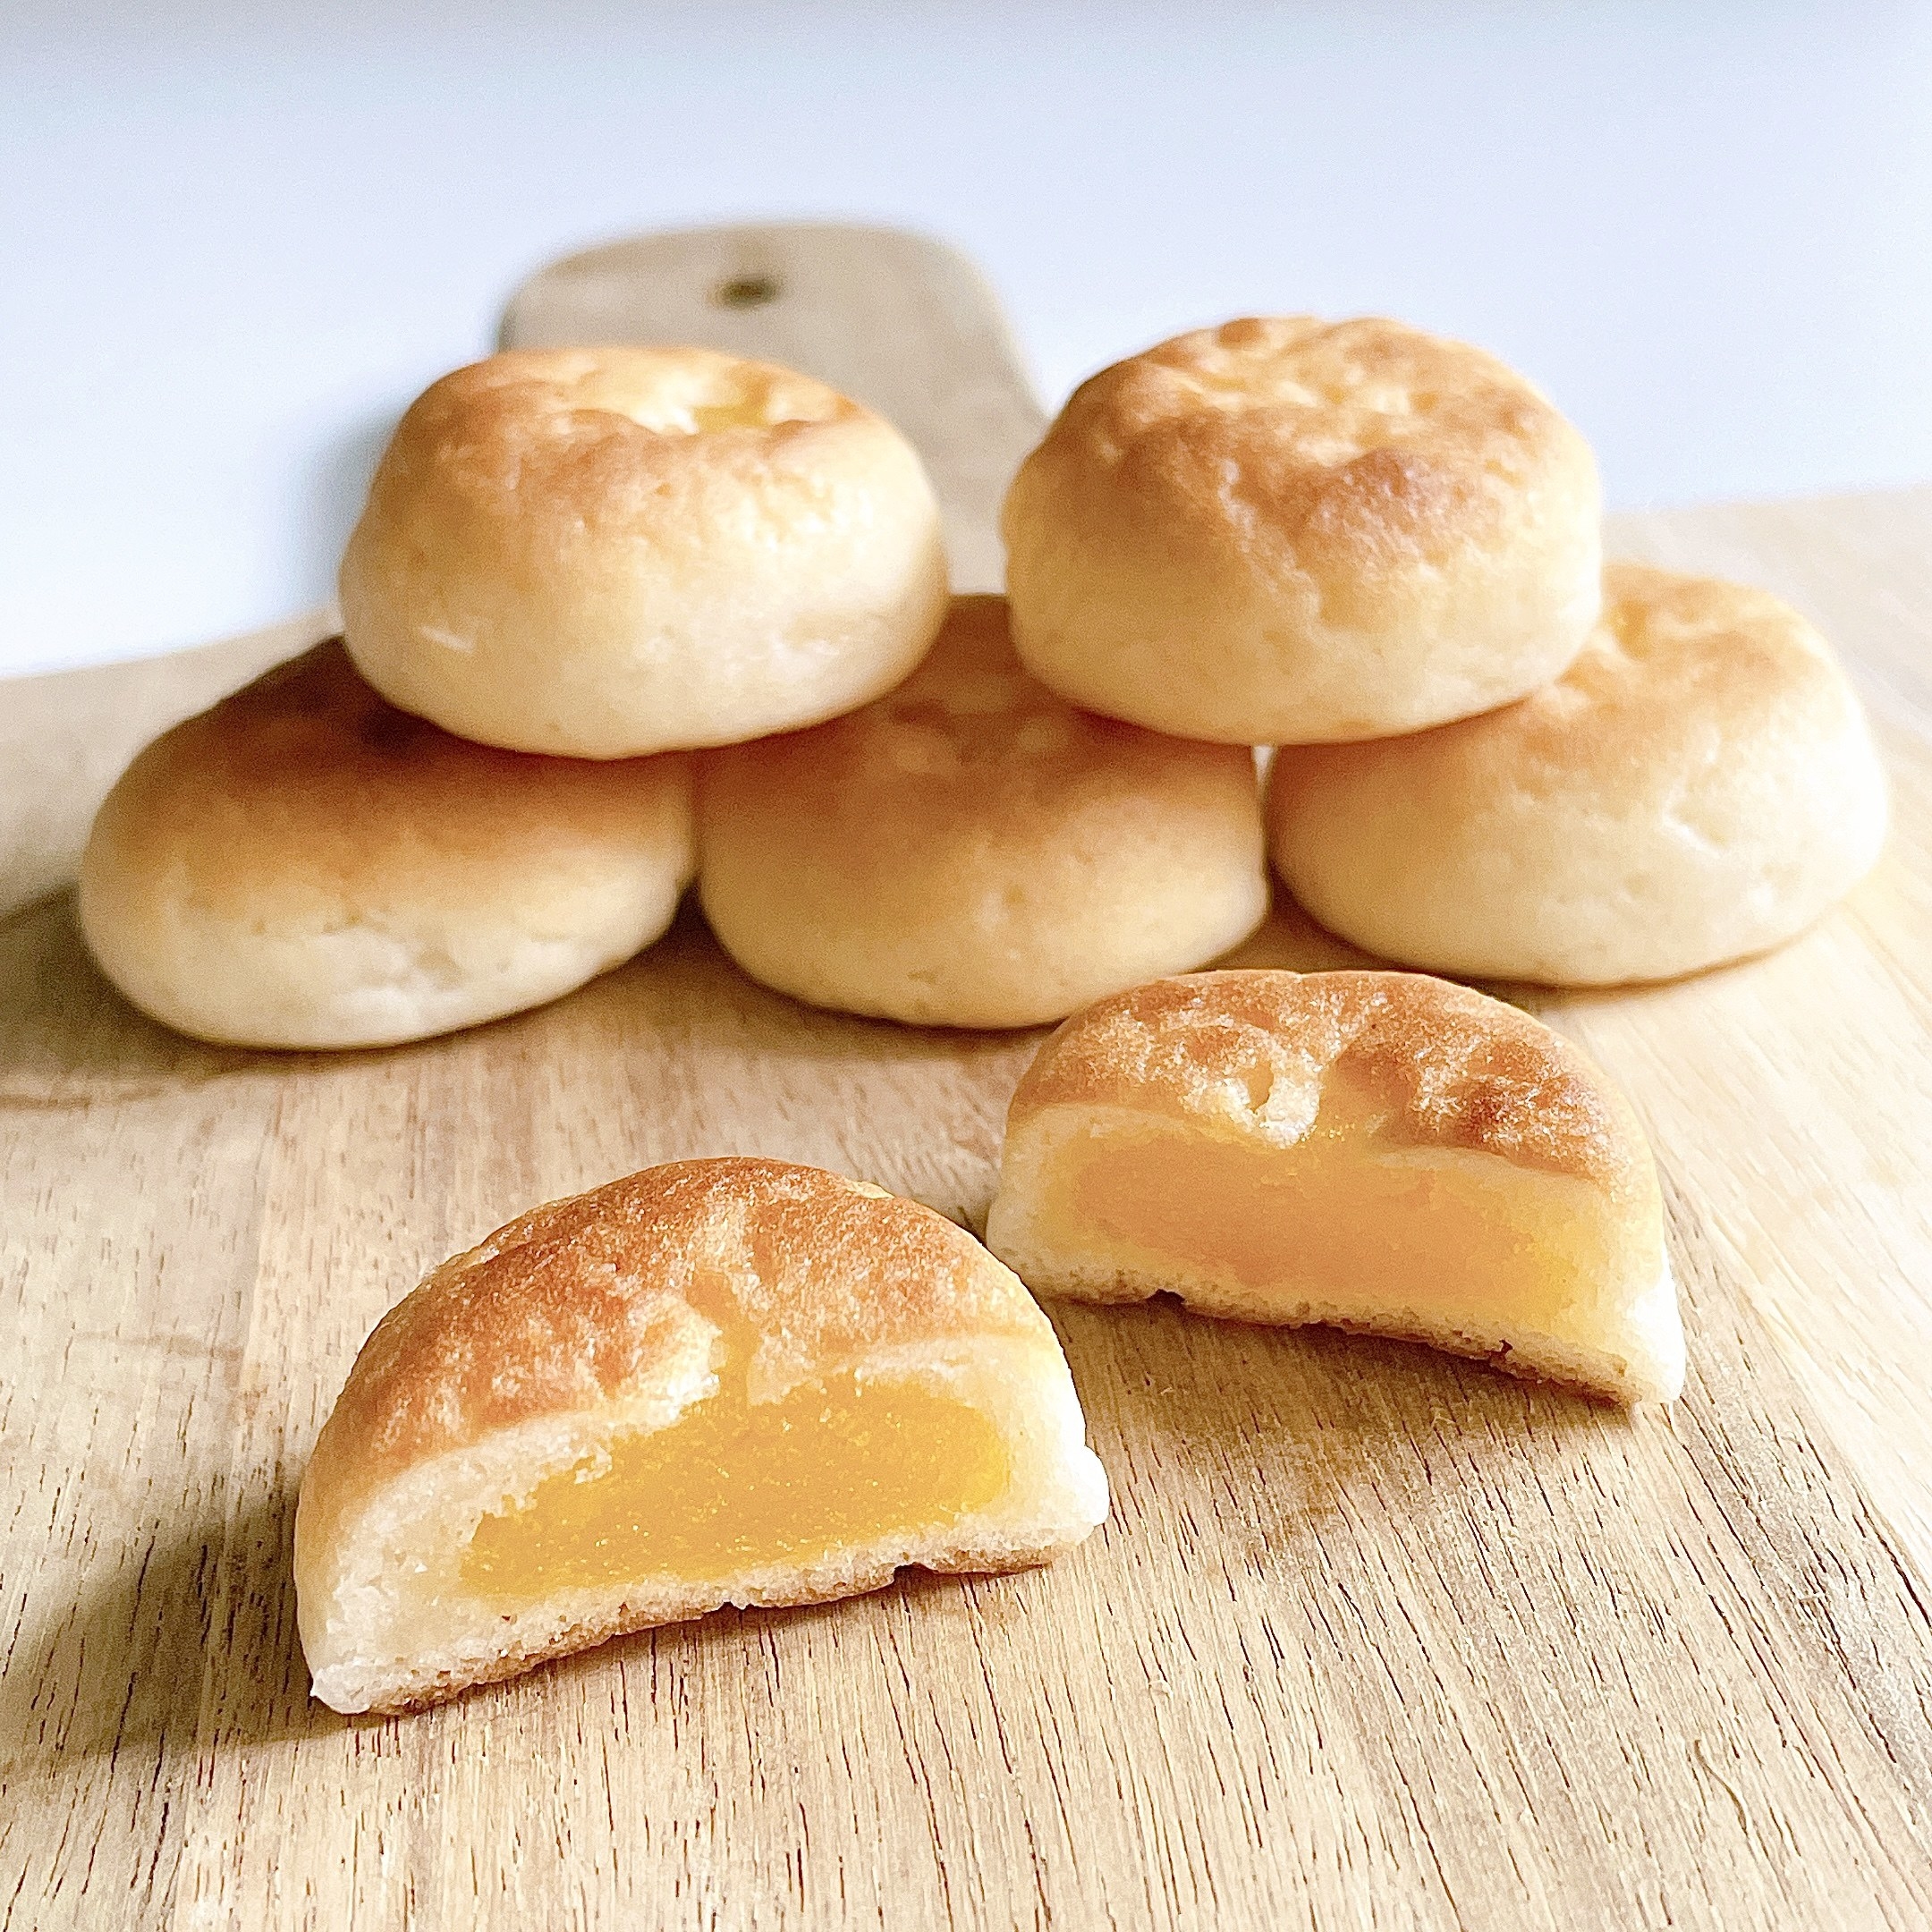 NewDays（ニューデイズ）のオススメのパン「もっちり食感のクリームパン」